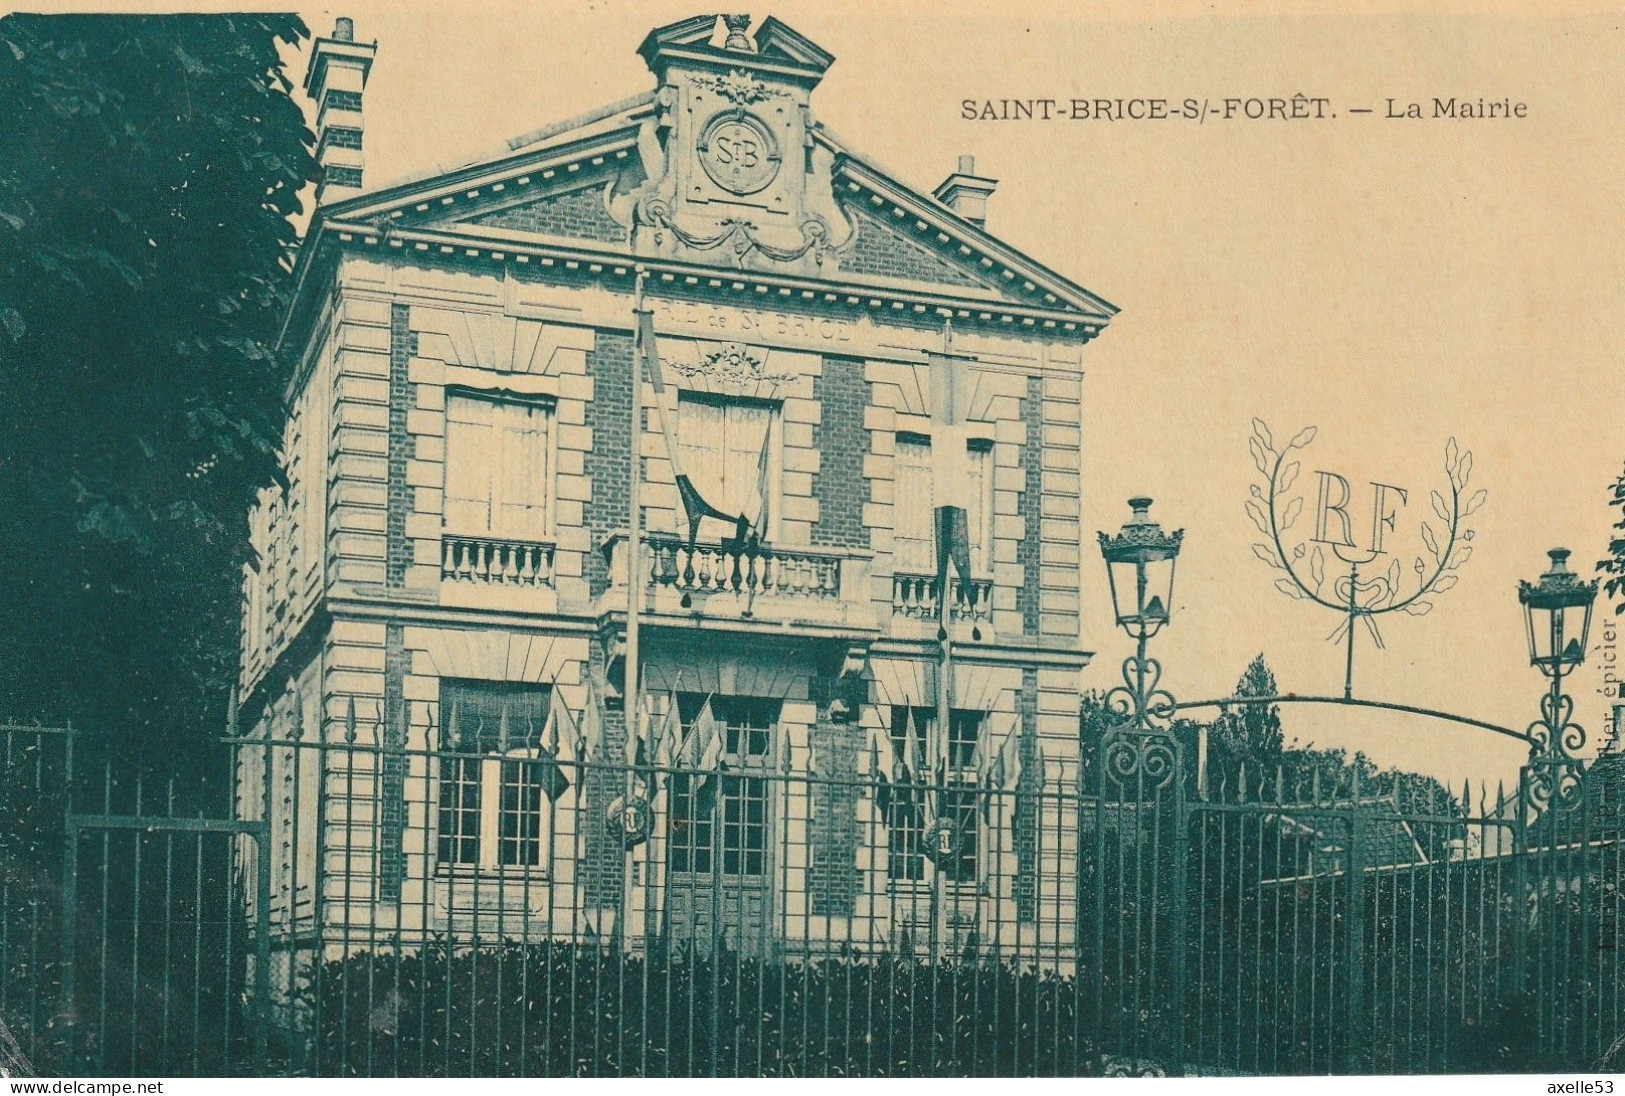 Saint-Brice-S/-Foret 95 (9662) La Mairie, Carte Glacée - Saint-Brice-sous-Forêt